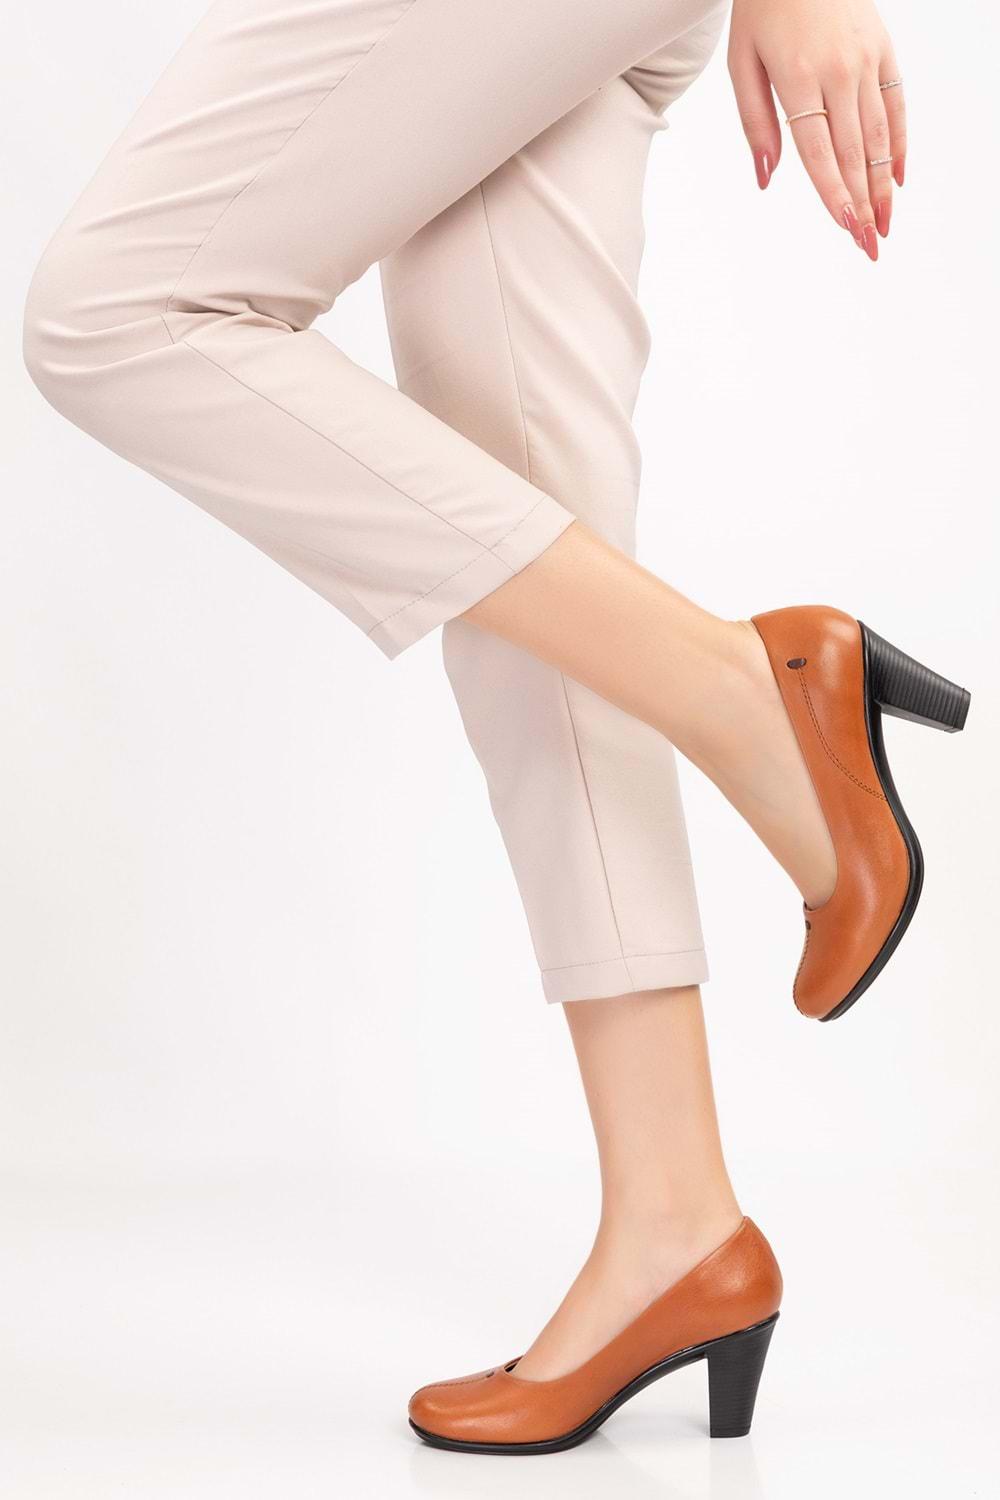 Gondol Kadın Hakiki Deri Klasik Topuklu Ayakkabı vdt.660 - Taba - 40